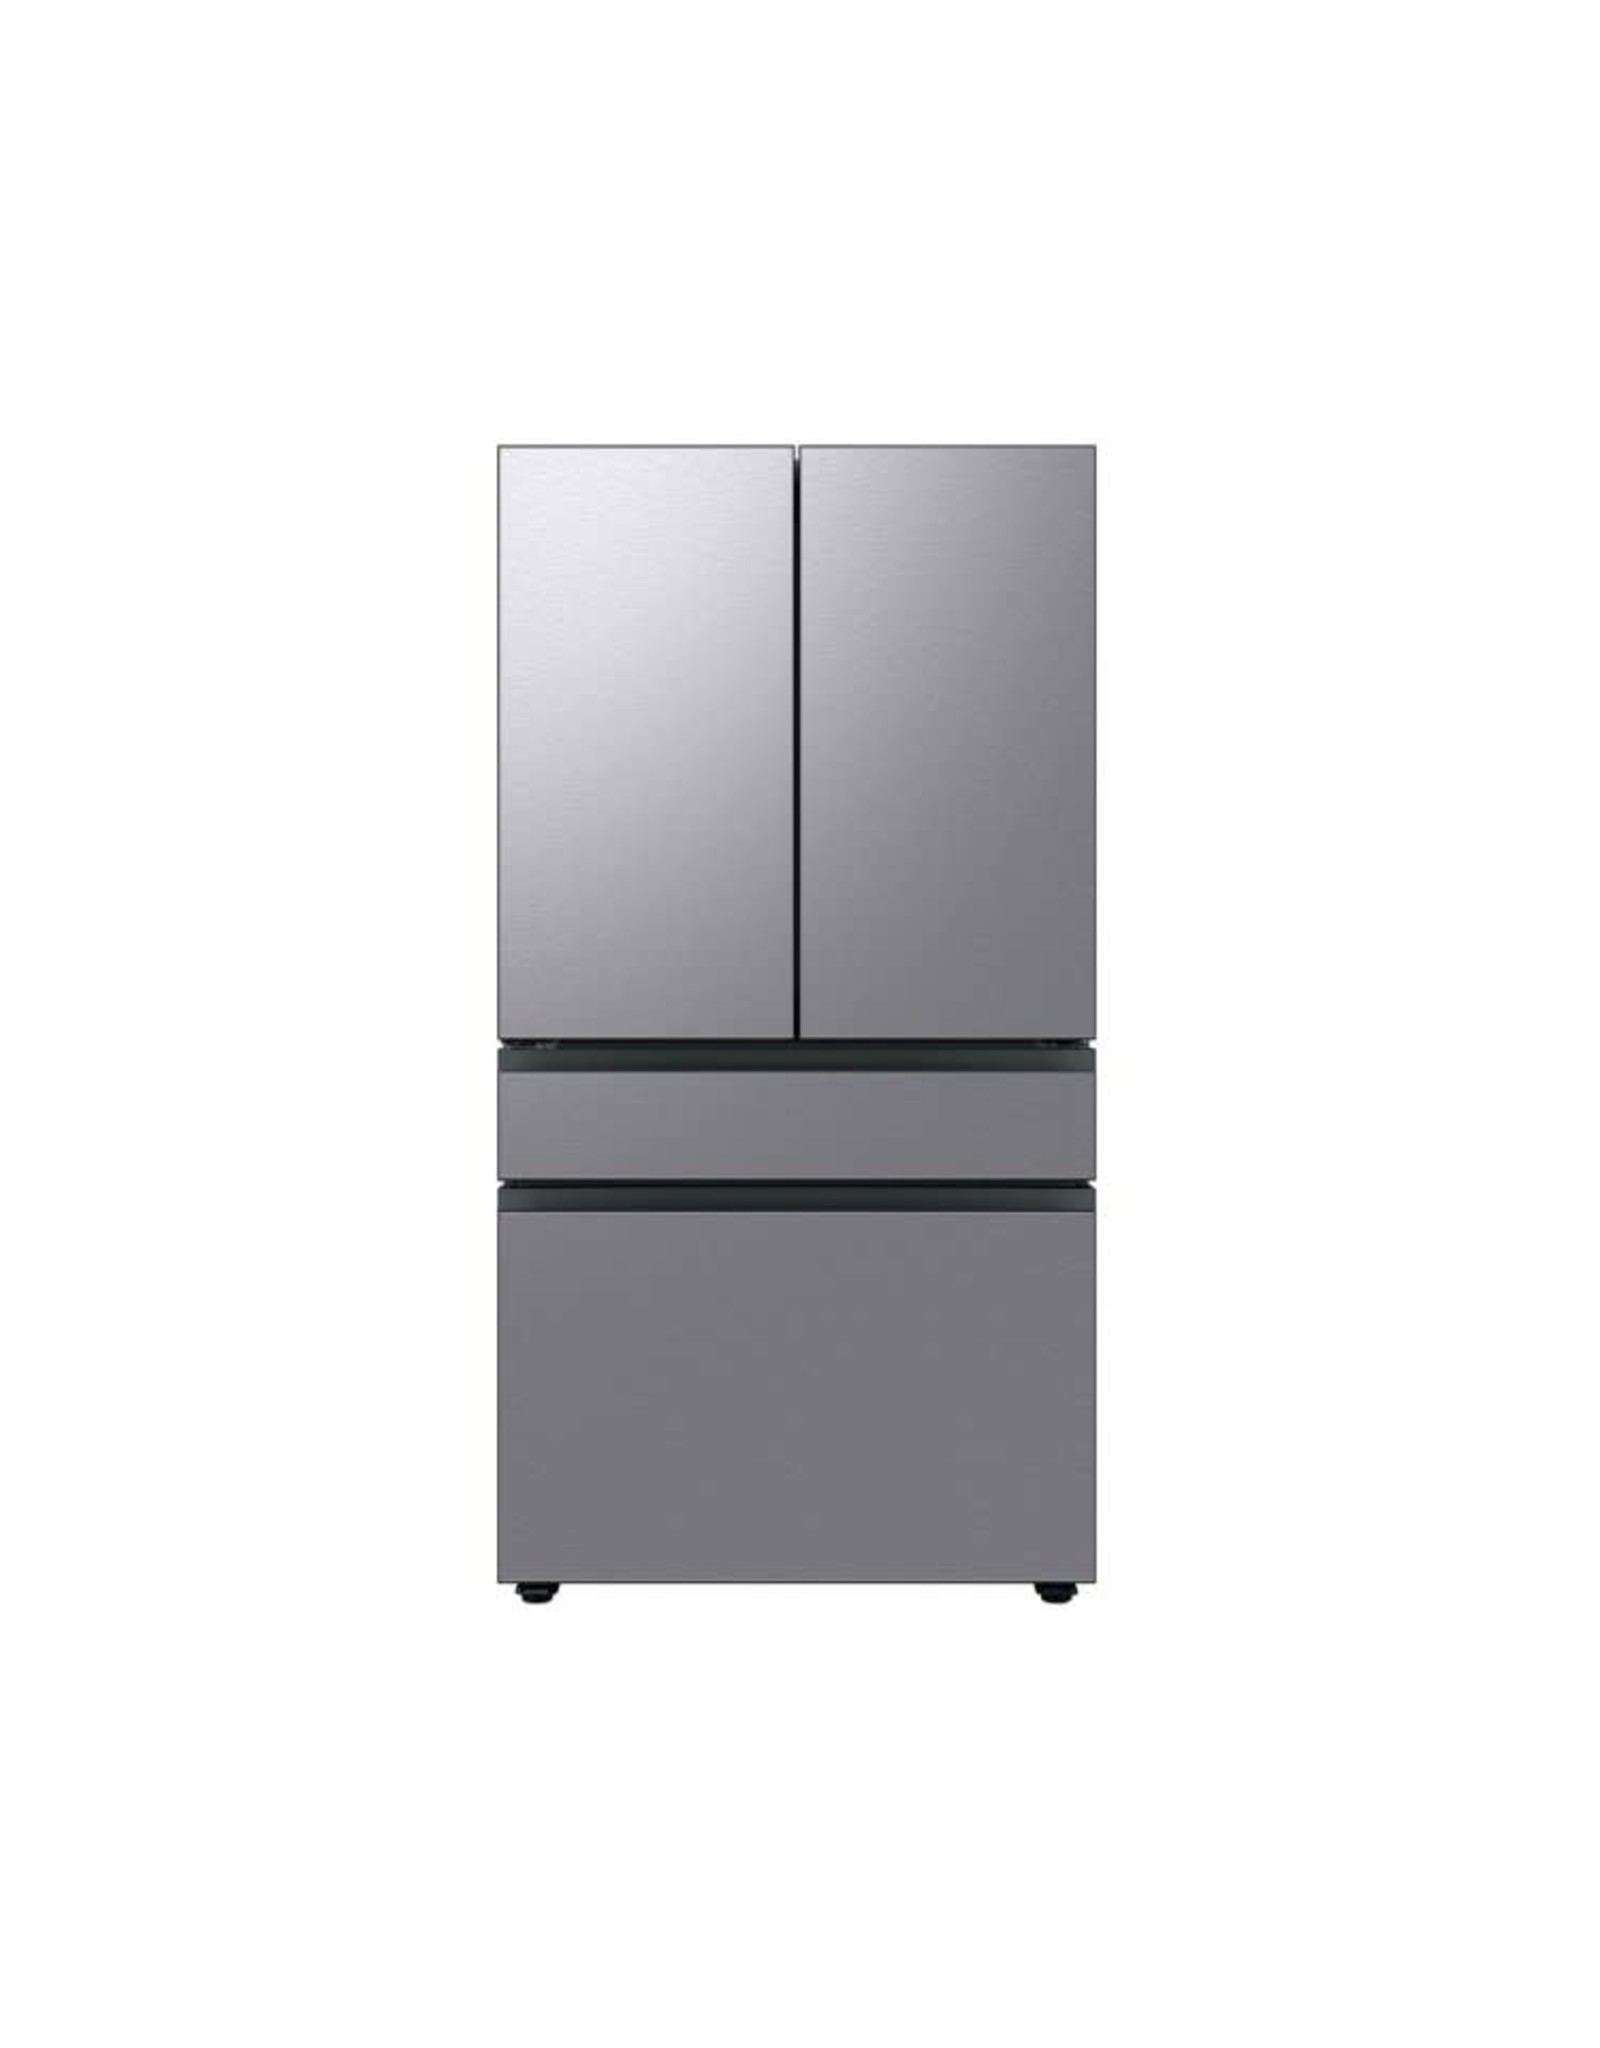 RF23BB8600QLA Samsung ADA 23 Cu. Ft. Stainless Steel BESPOKE Counter Depth 4-Door French Door Refrigerator With Beverage Center